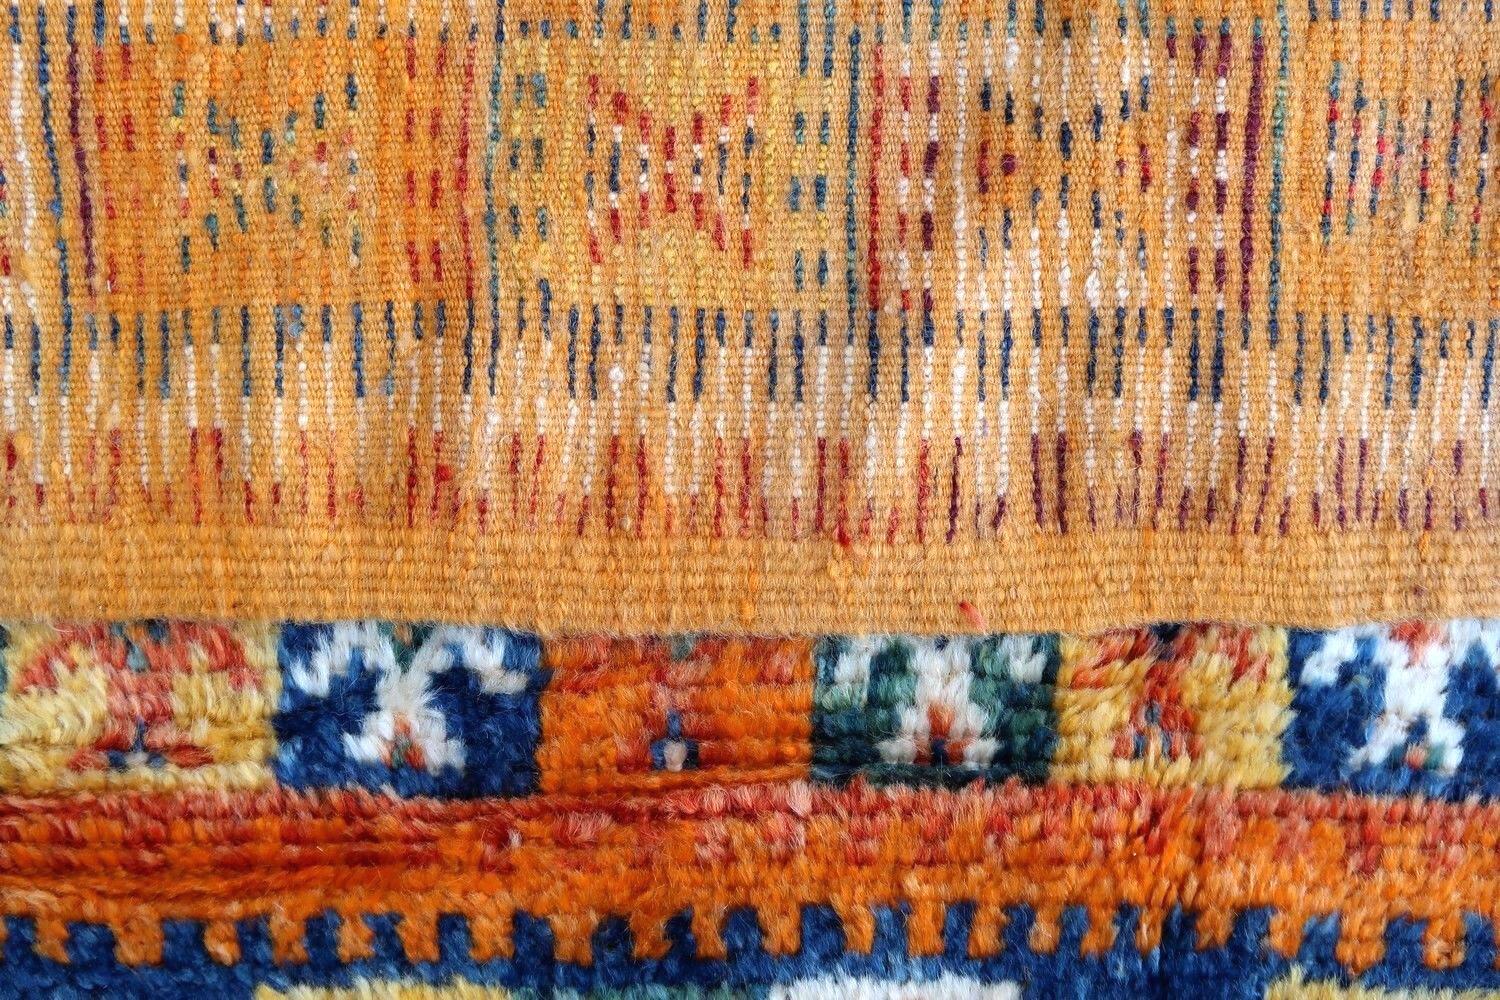 Antiker handgefertigter marokkanischer Teppich in gutem Originalzustand. Der Teppich stammt aus dem Anfang des 20. Jahrhunderts und ist aus Wolle gefertigt.

-zustand: original gut,

-um: 1900,

-größe: 4,2' x 9,2' (130cm x